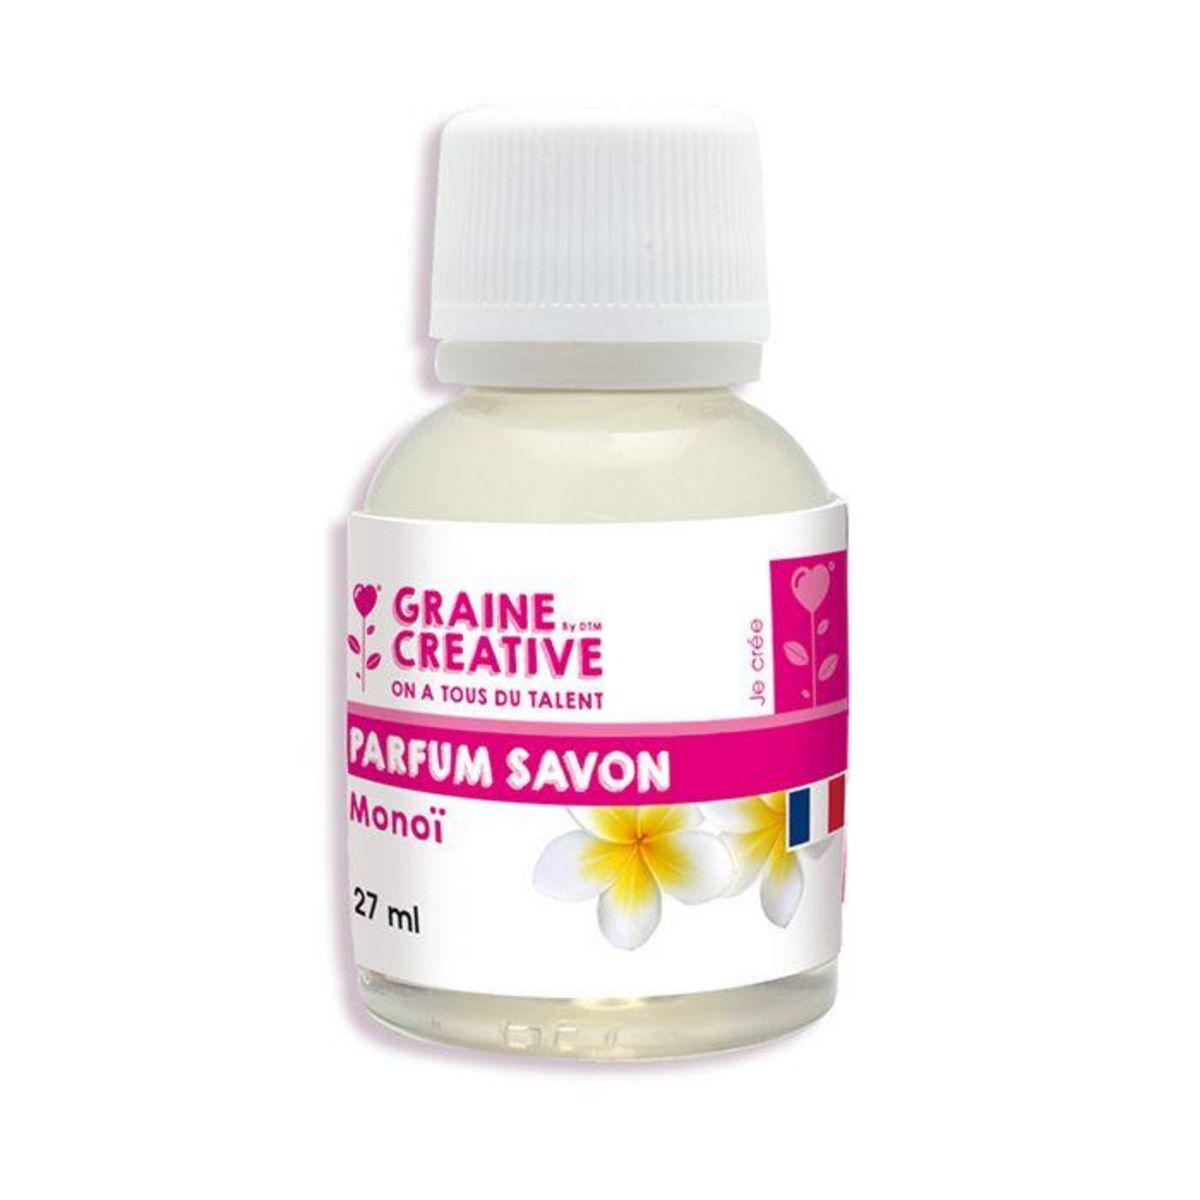 Graine créative Parfum pour savon 27 ml - Monoï